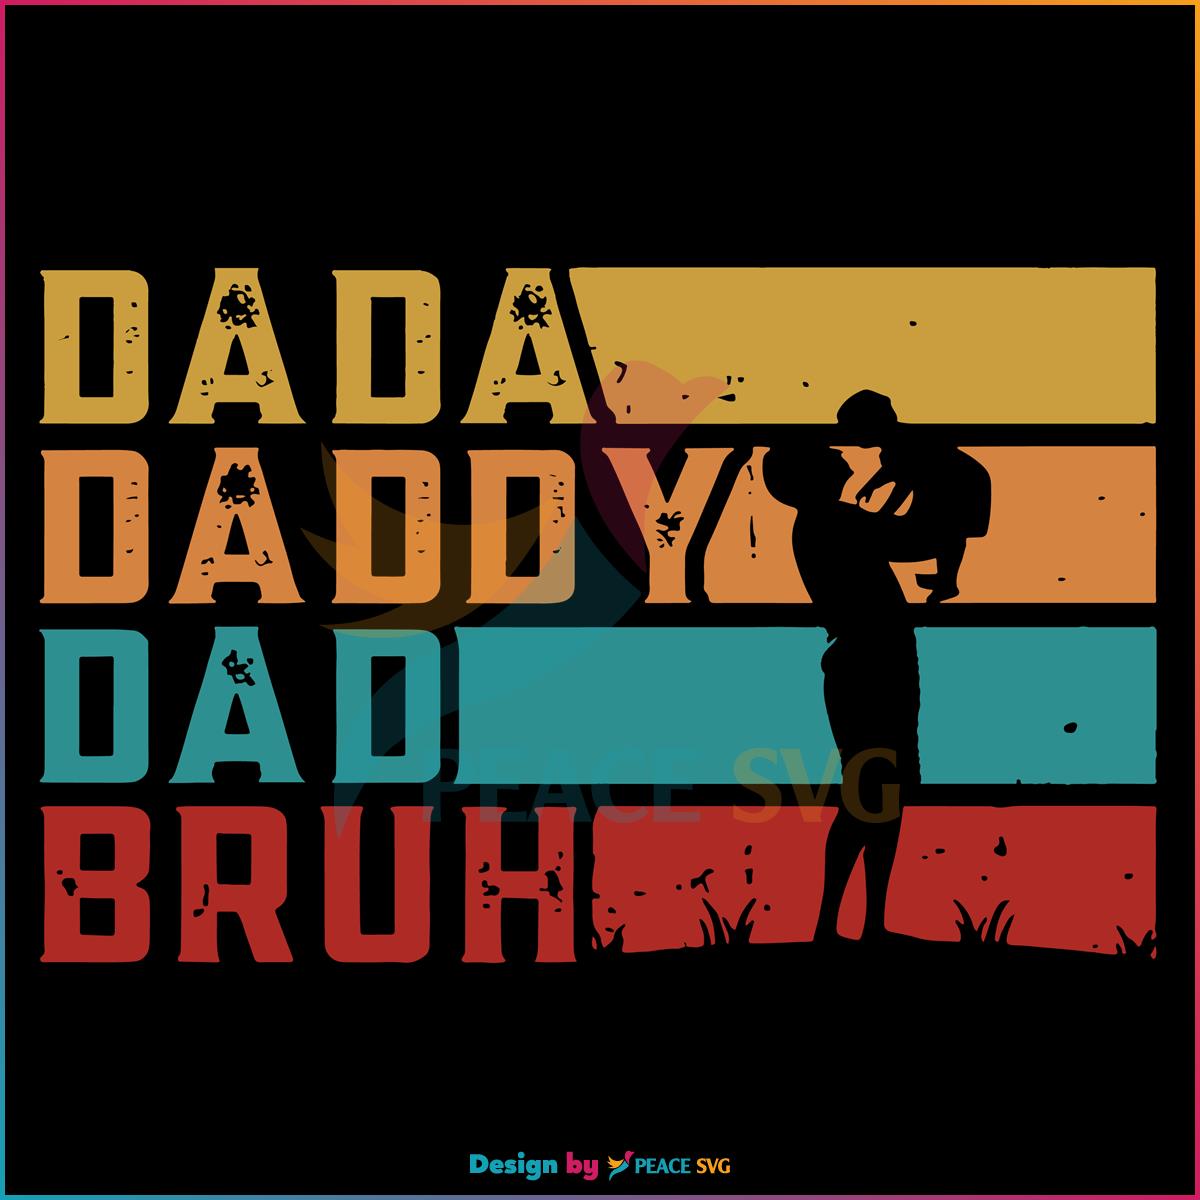 vintage-dada-daddy-dad-bruh-funny-quotes-svg-graphic-design-file